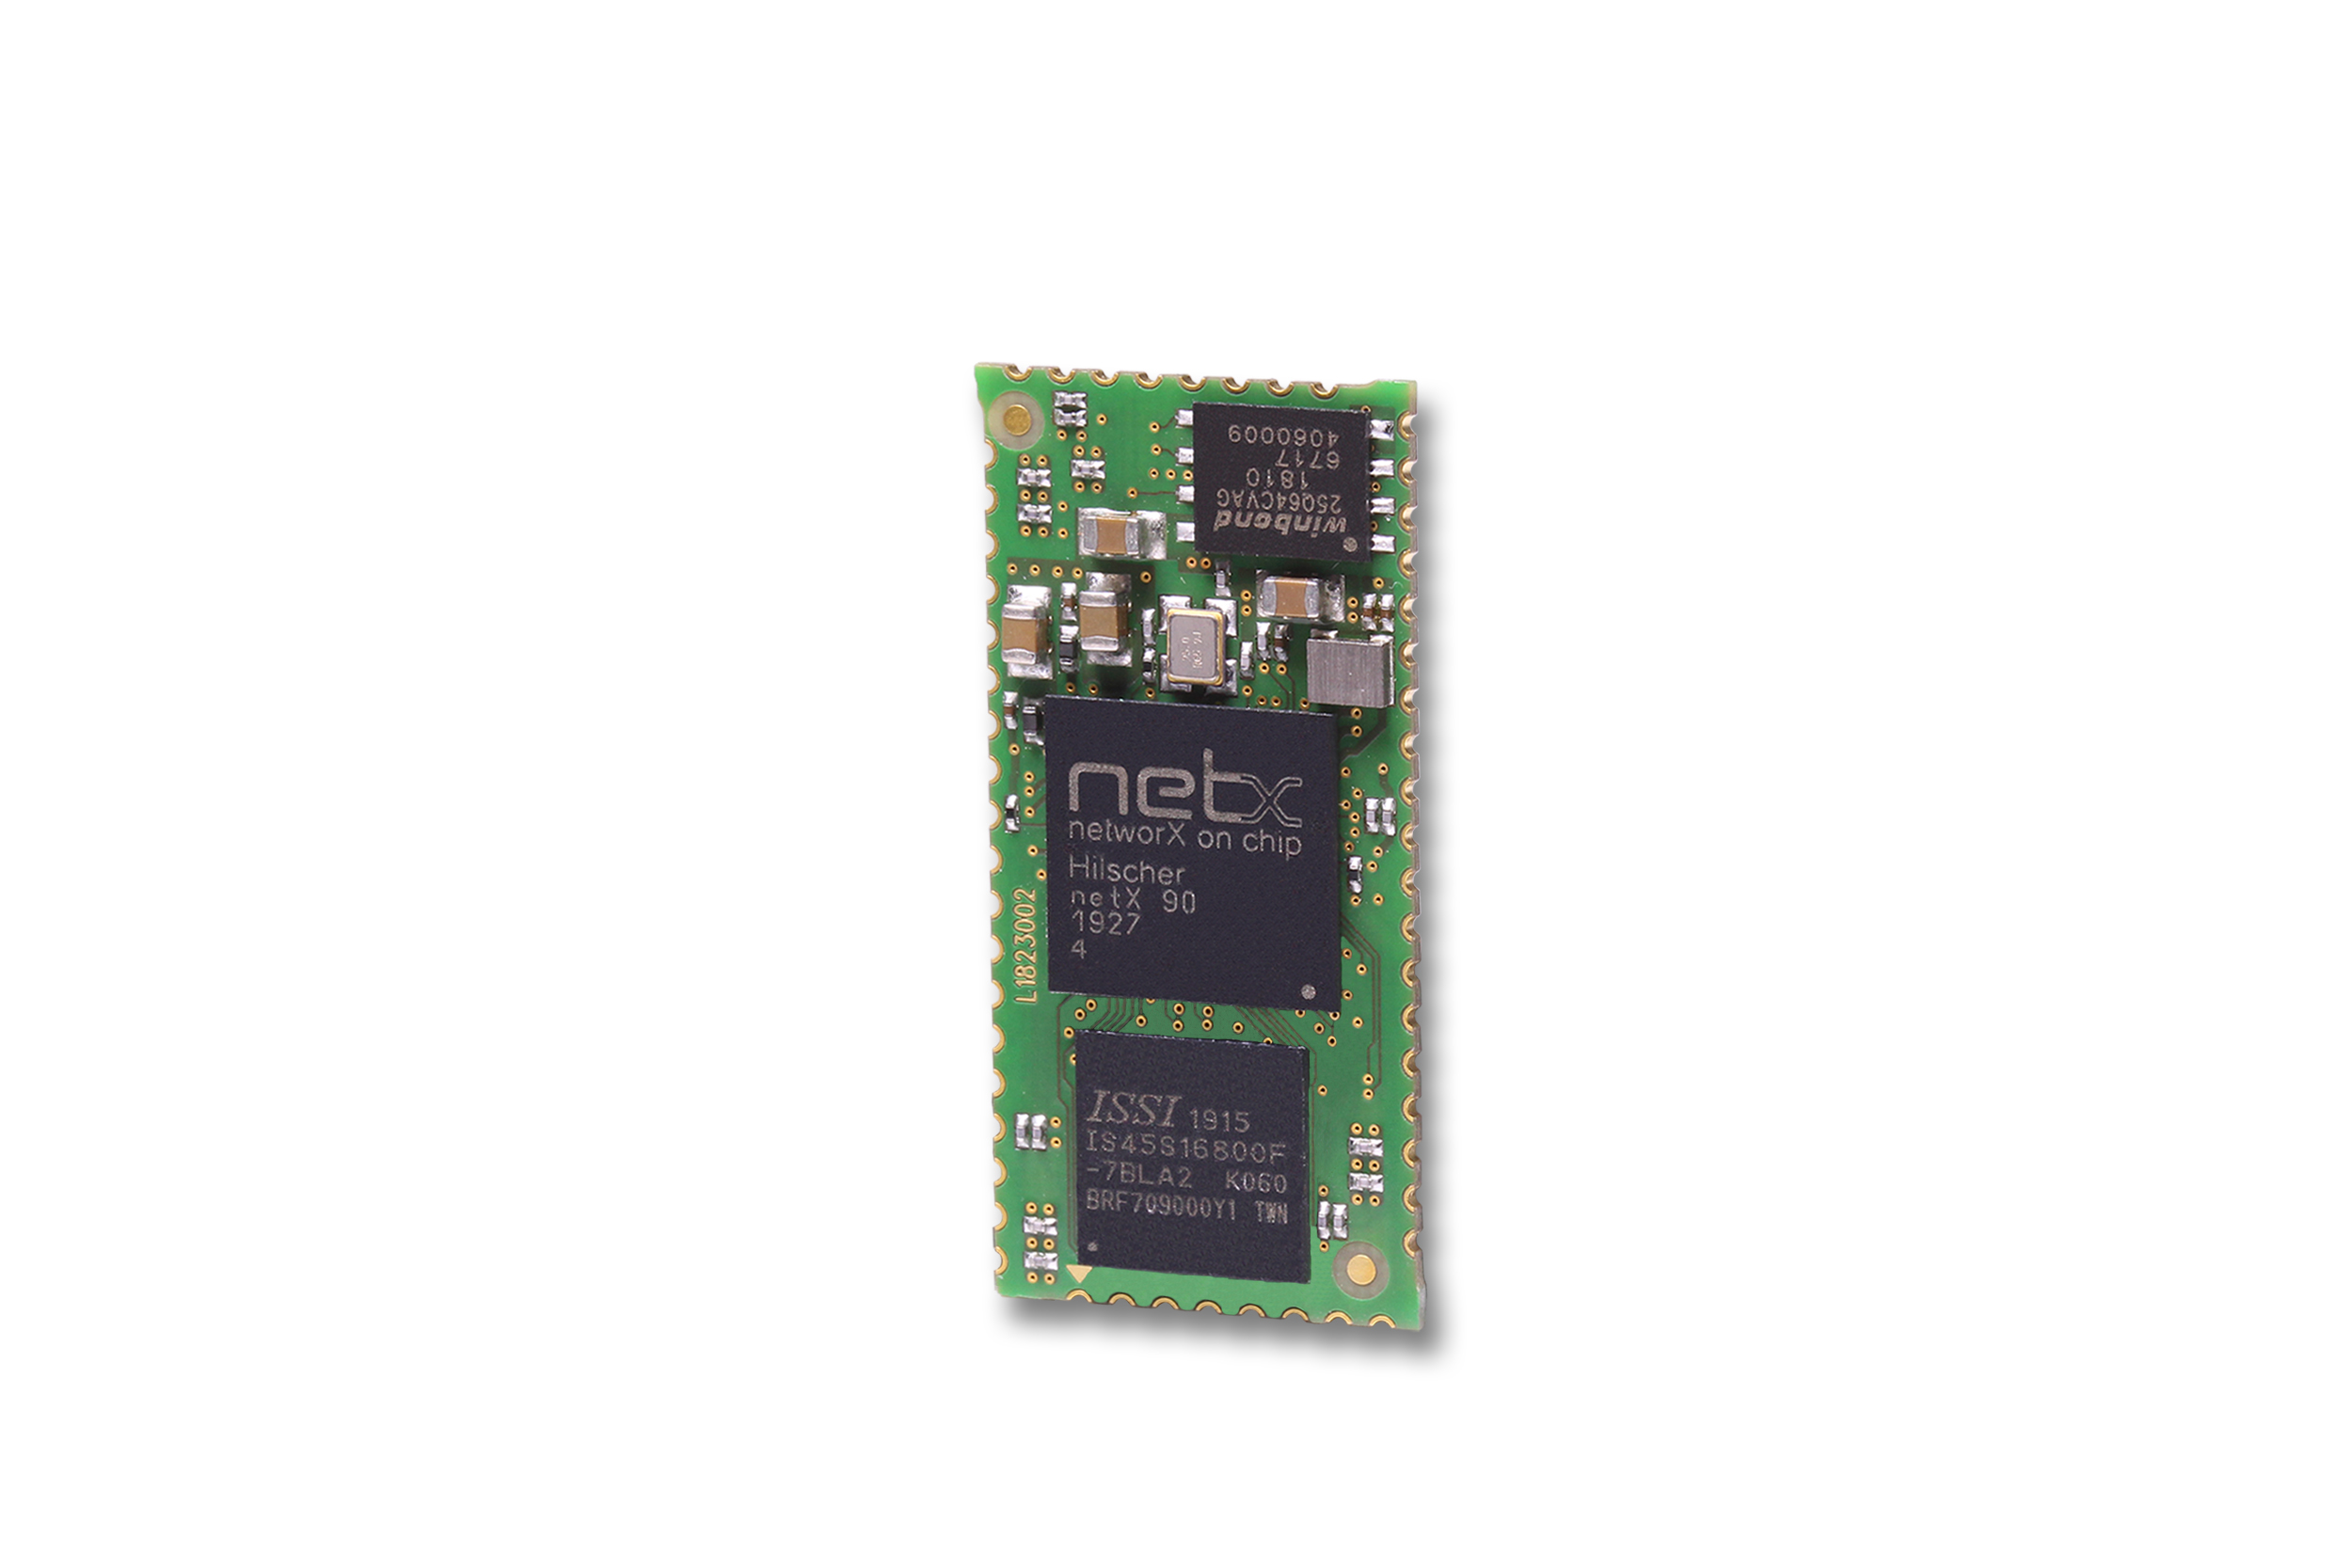 netX 90, il netRAPID H90 e NXHX 90-JATG di Hilscher sono stati progettati per soddisfare le diverse esigenze delle aziende interessate ad offrire dispositivi compatibili con CC-Link IE Field Basic